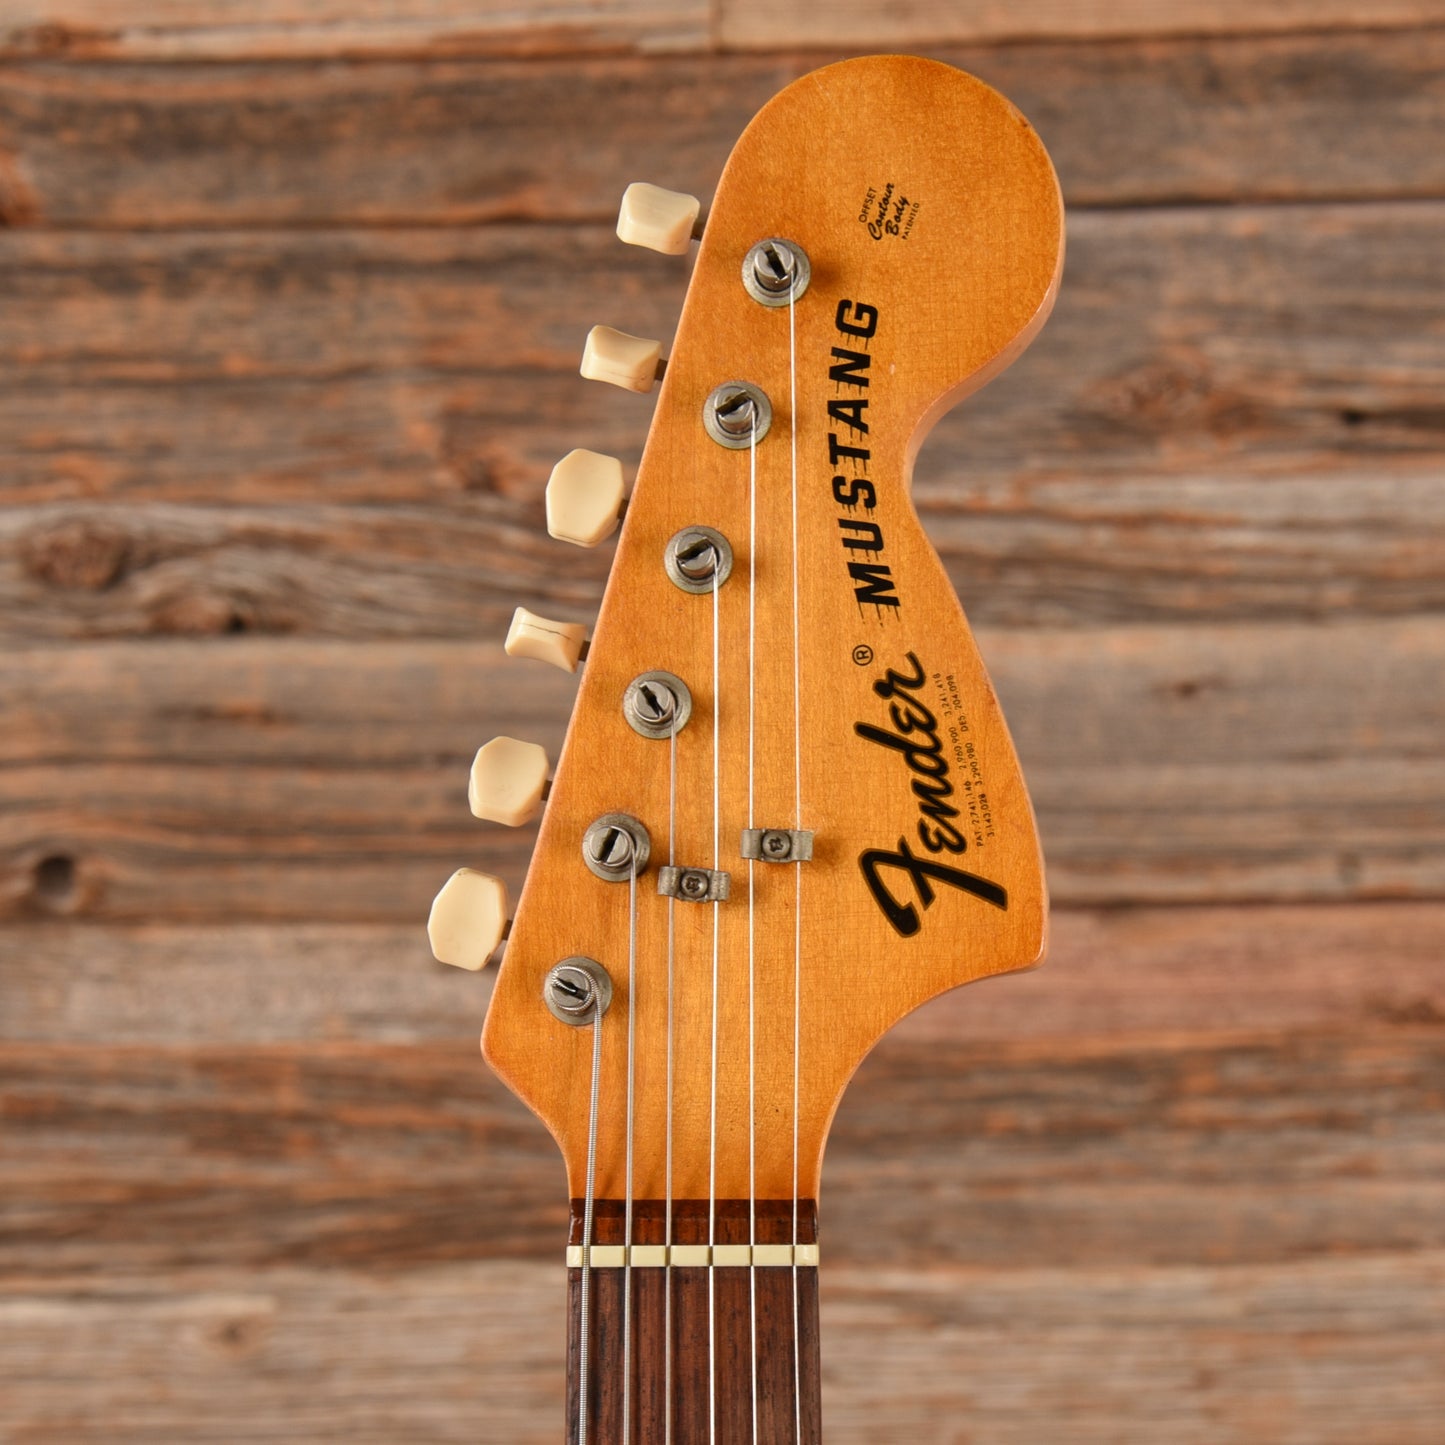 Fender Mustang Sunburst 1974